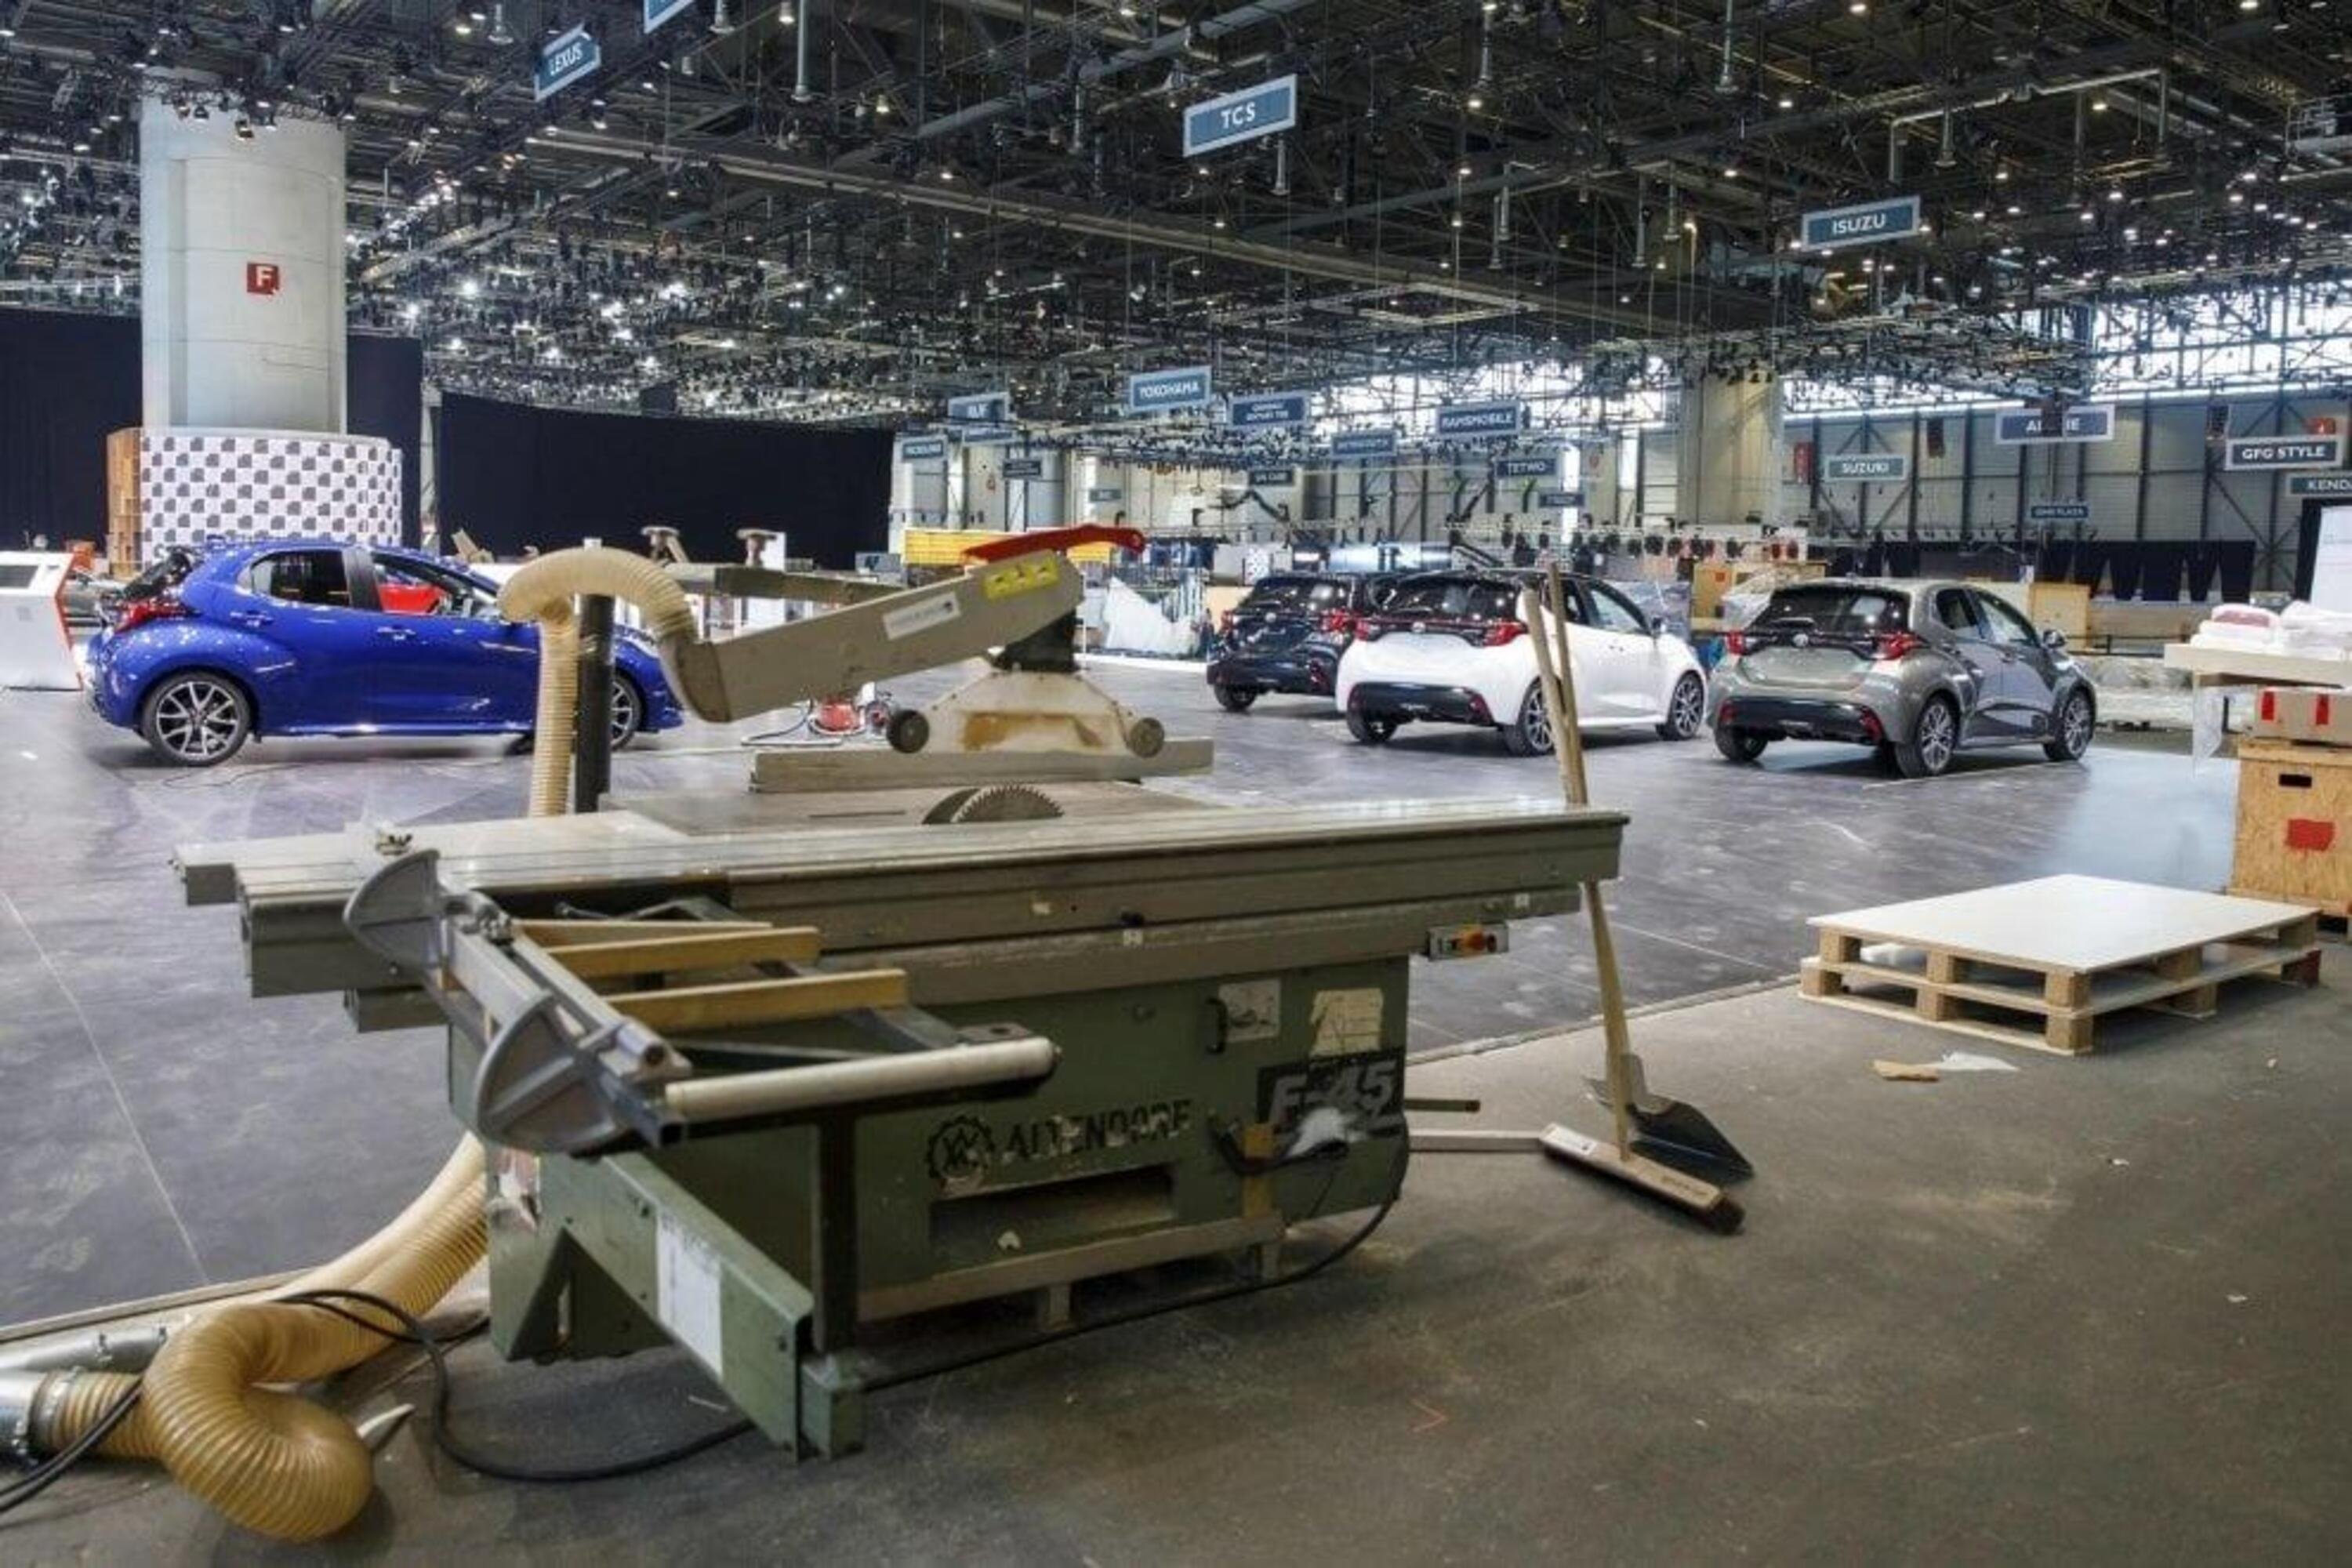 Salone di Ginevra 2020 cancellato: le foto degli stand in allestimento